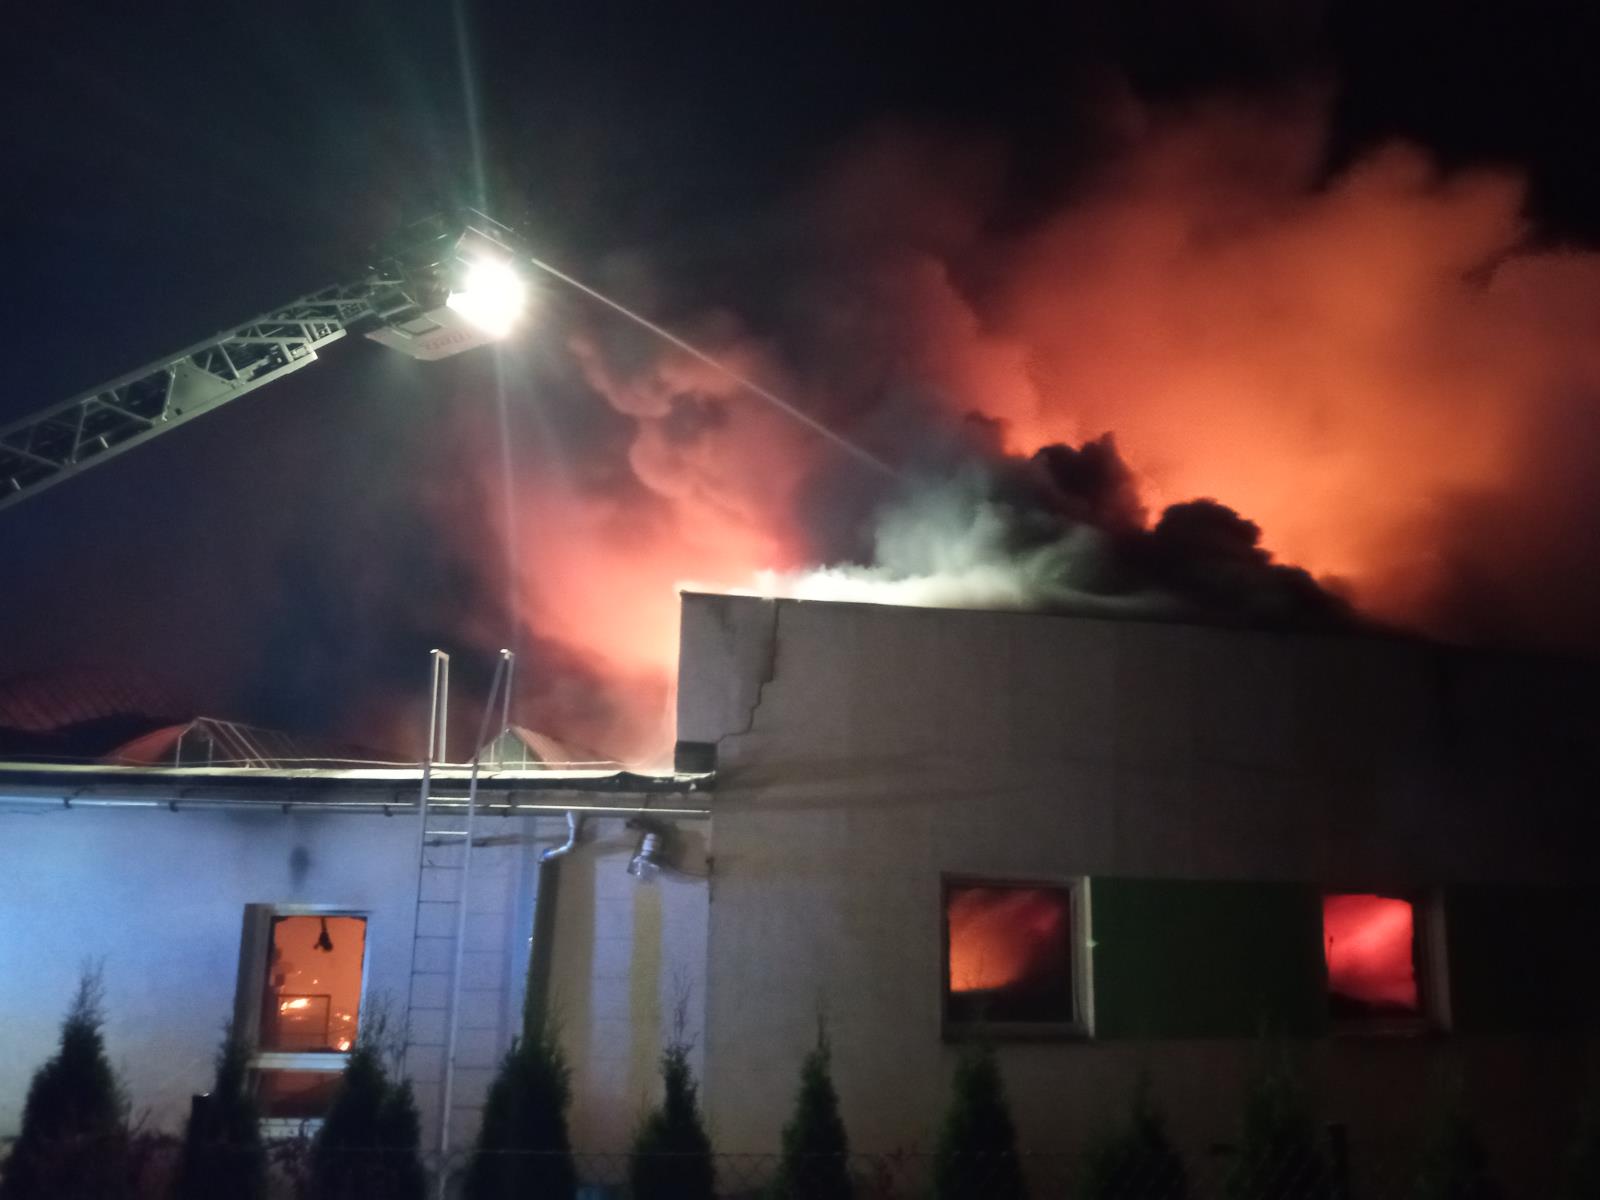 LIK_Požár průmyslového objektu v Roztokách u Jilemnice_hasičí z žebříku hasí hořící objekt.jpg